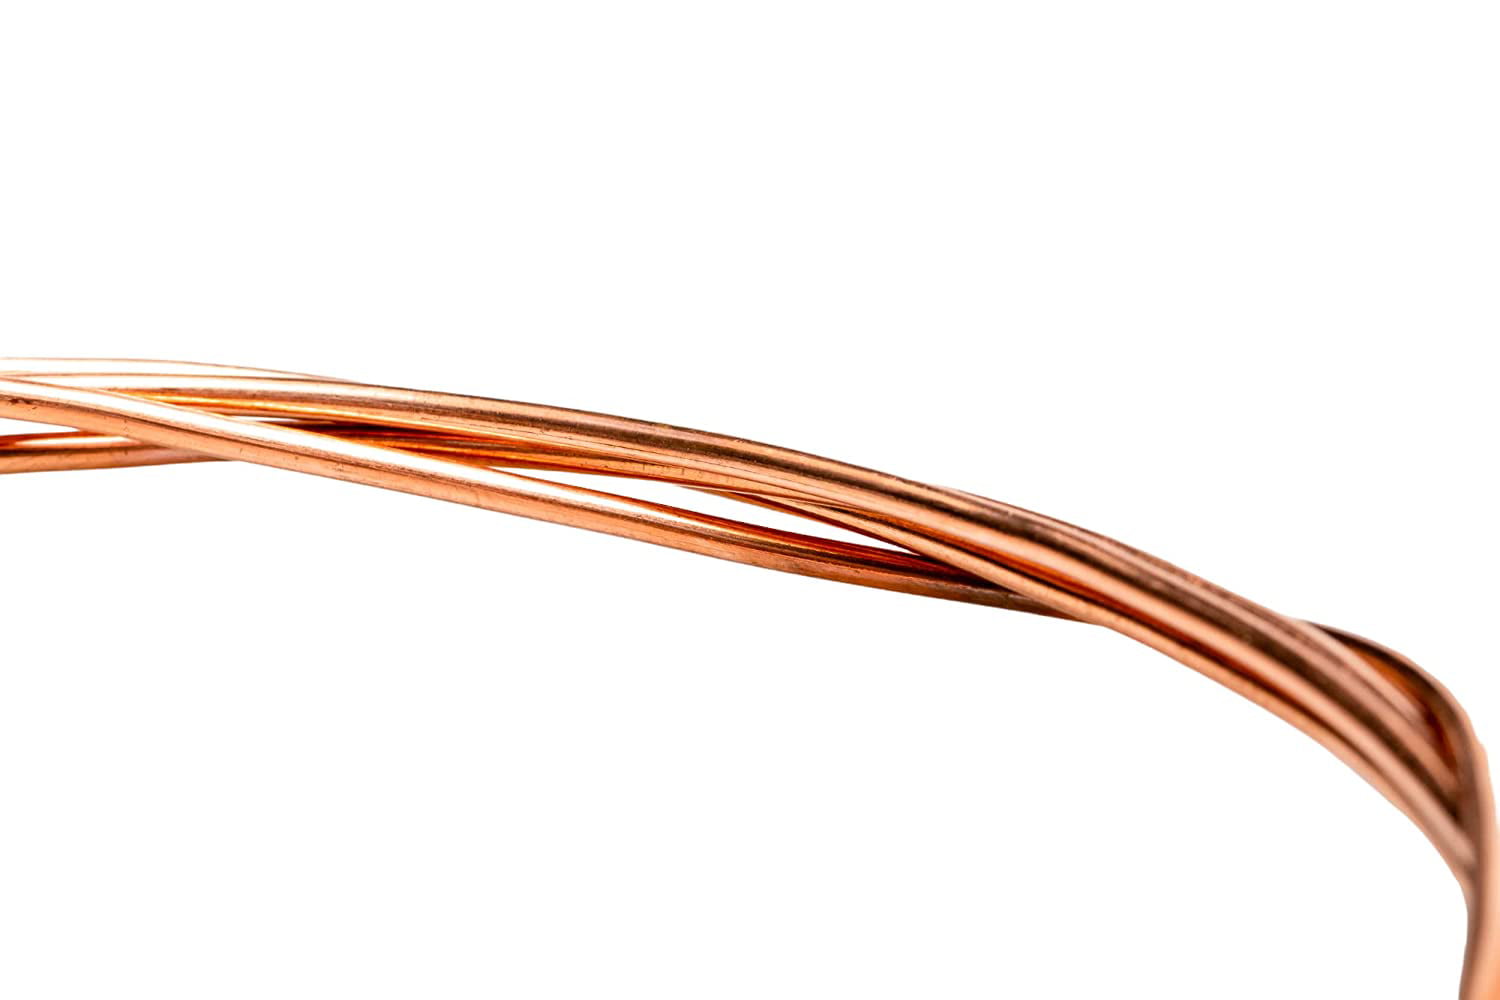 14 Ga Solid Bare Copper Round Wire 50 Ft. Coil (Dead Soft) 99.9% Pure